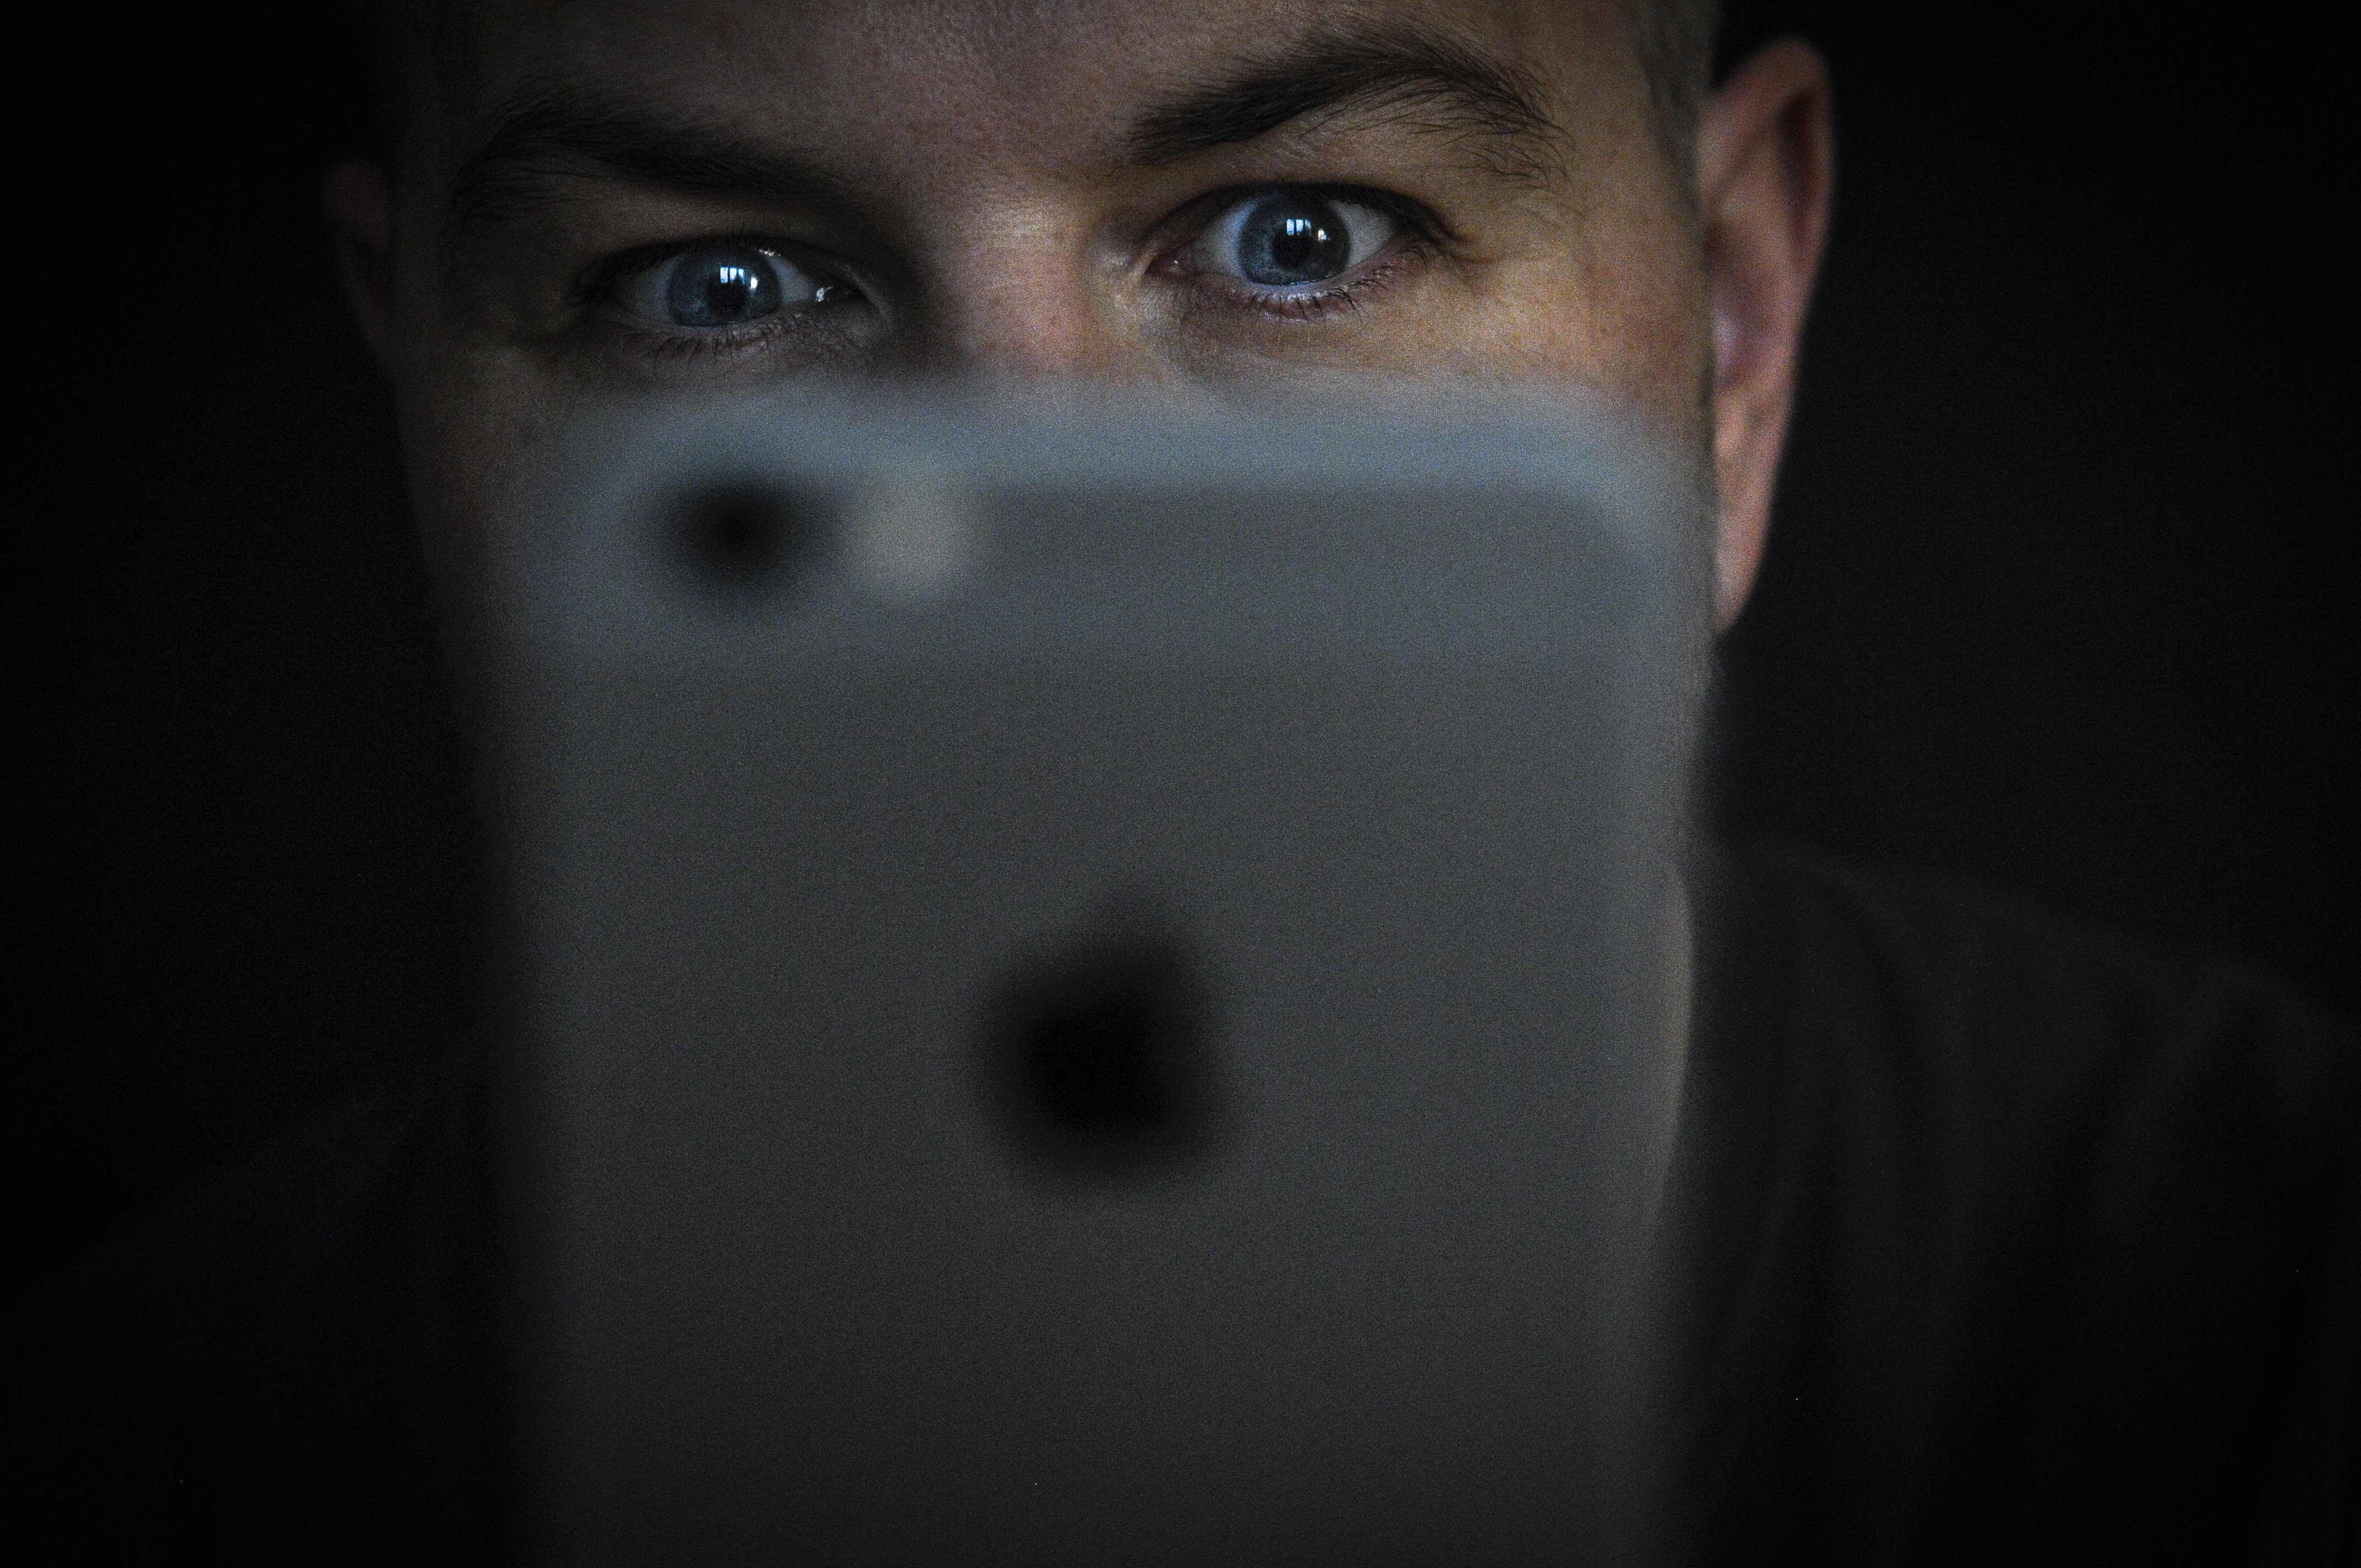 Az AFP stockfotója, amit tavaly novemberben az után tettek közzé, hogy komoly adatvédelmi aggályok merültek fel az új iPhoneX arcfelismerő előlapi kamerája miatt.